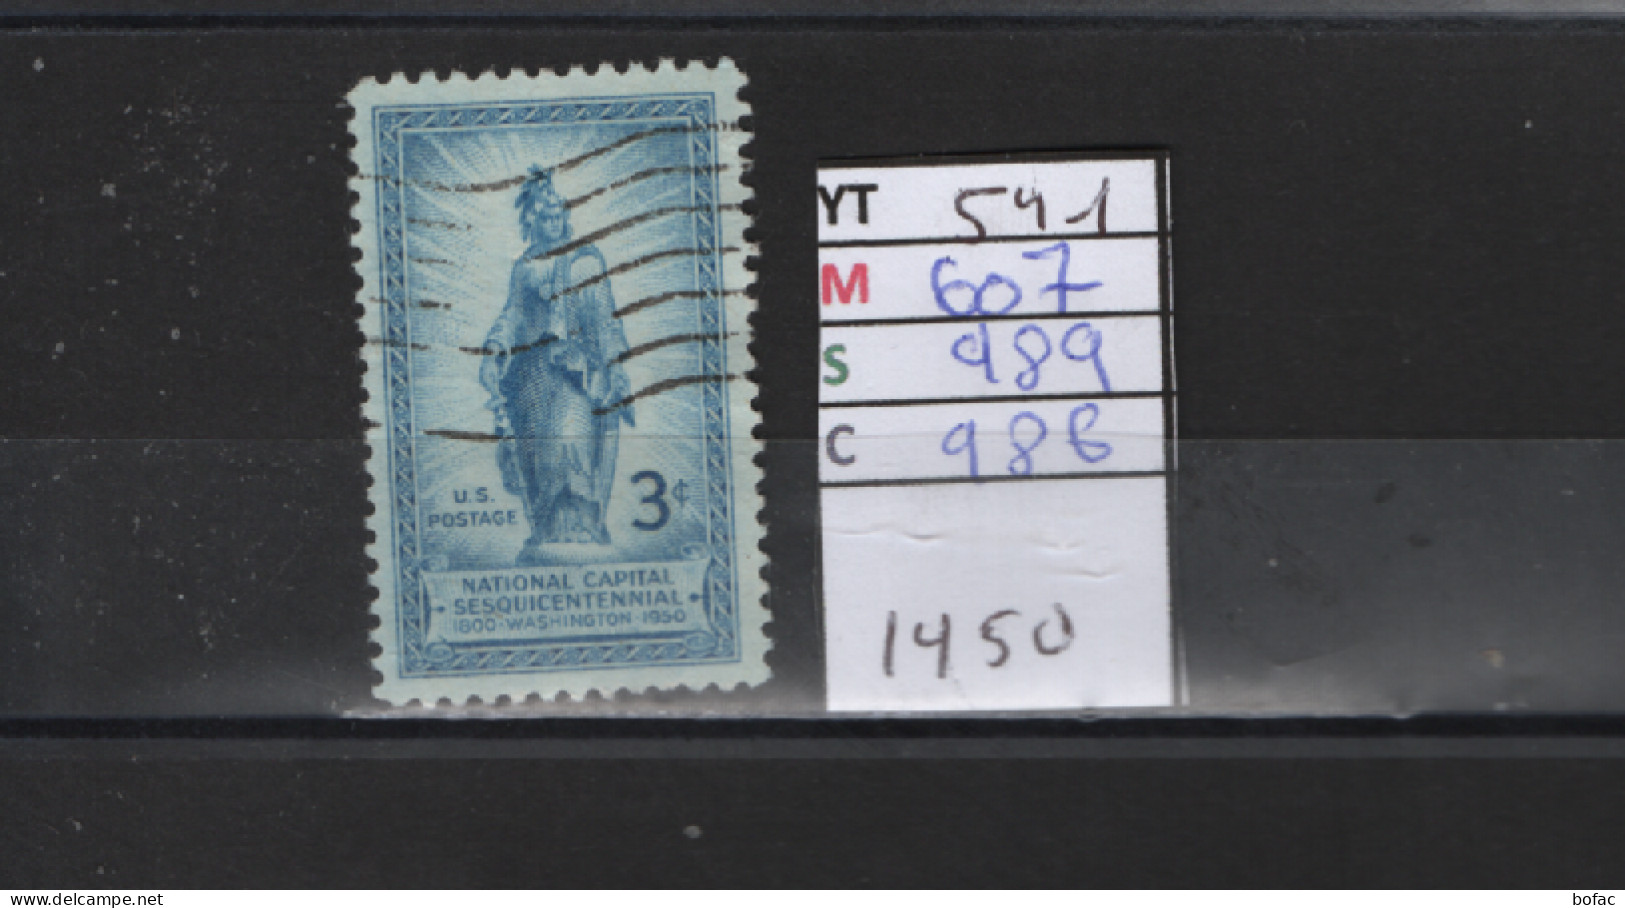 PRIX FIXE Obl 541 YT 607 MIC 989 SCO 986 GIB Statue De La Liberté Dôme Du Capitole 1950 Etats Unis 58A/05 - Used Stamps